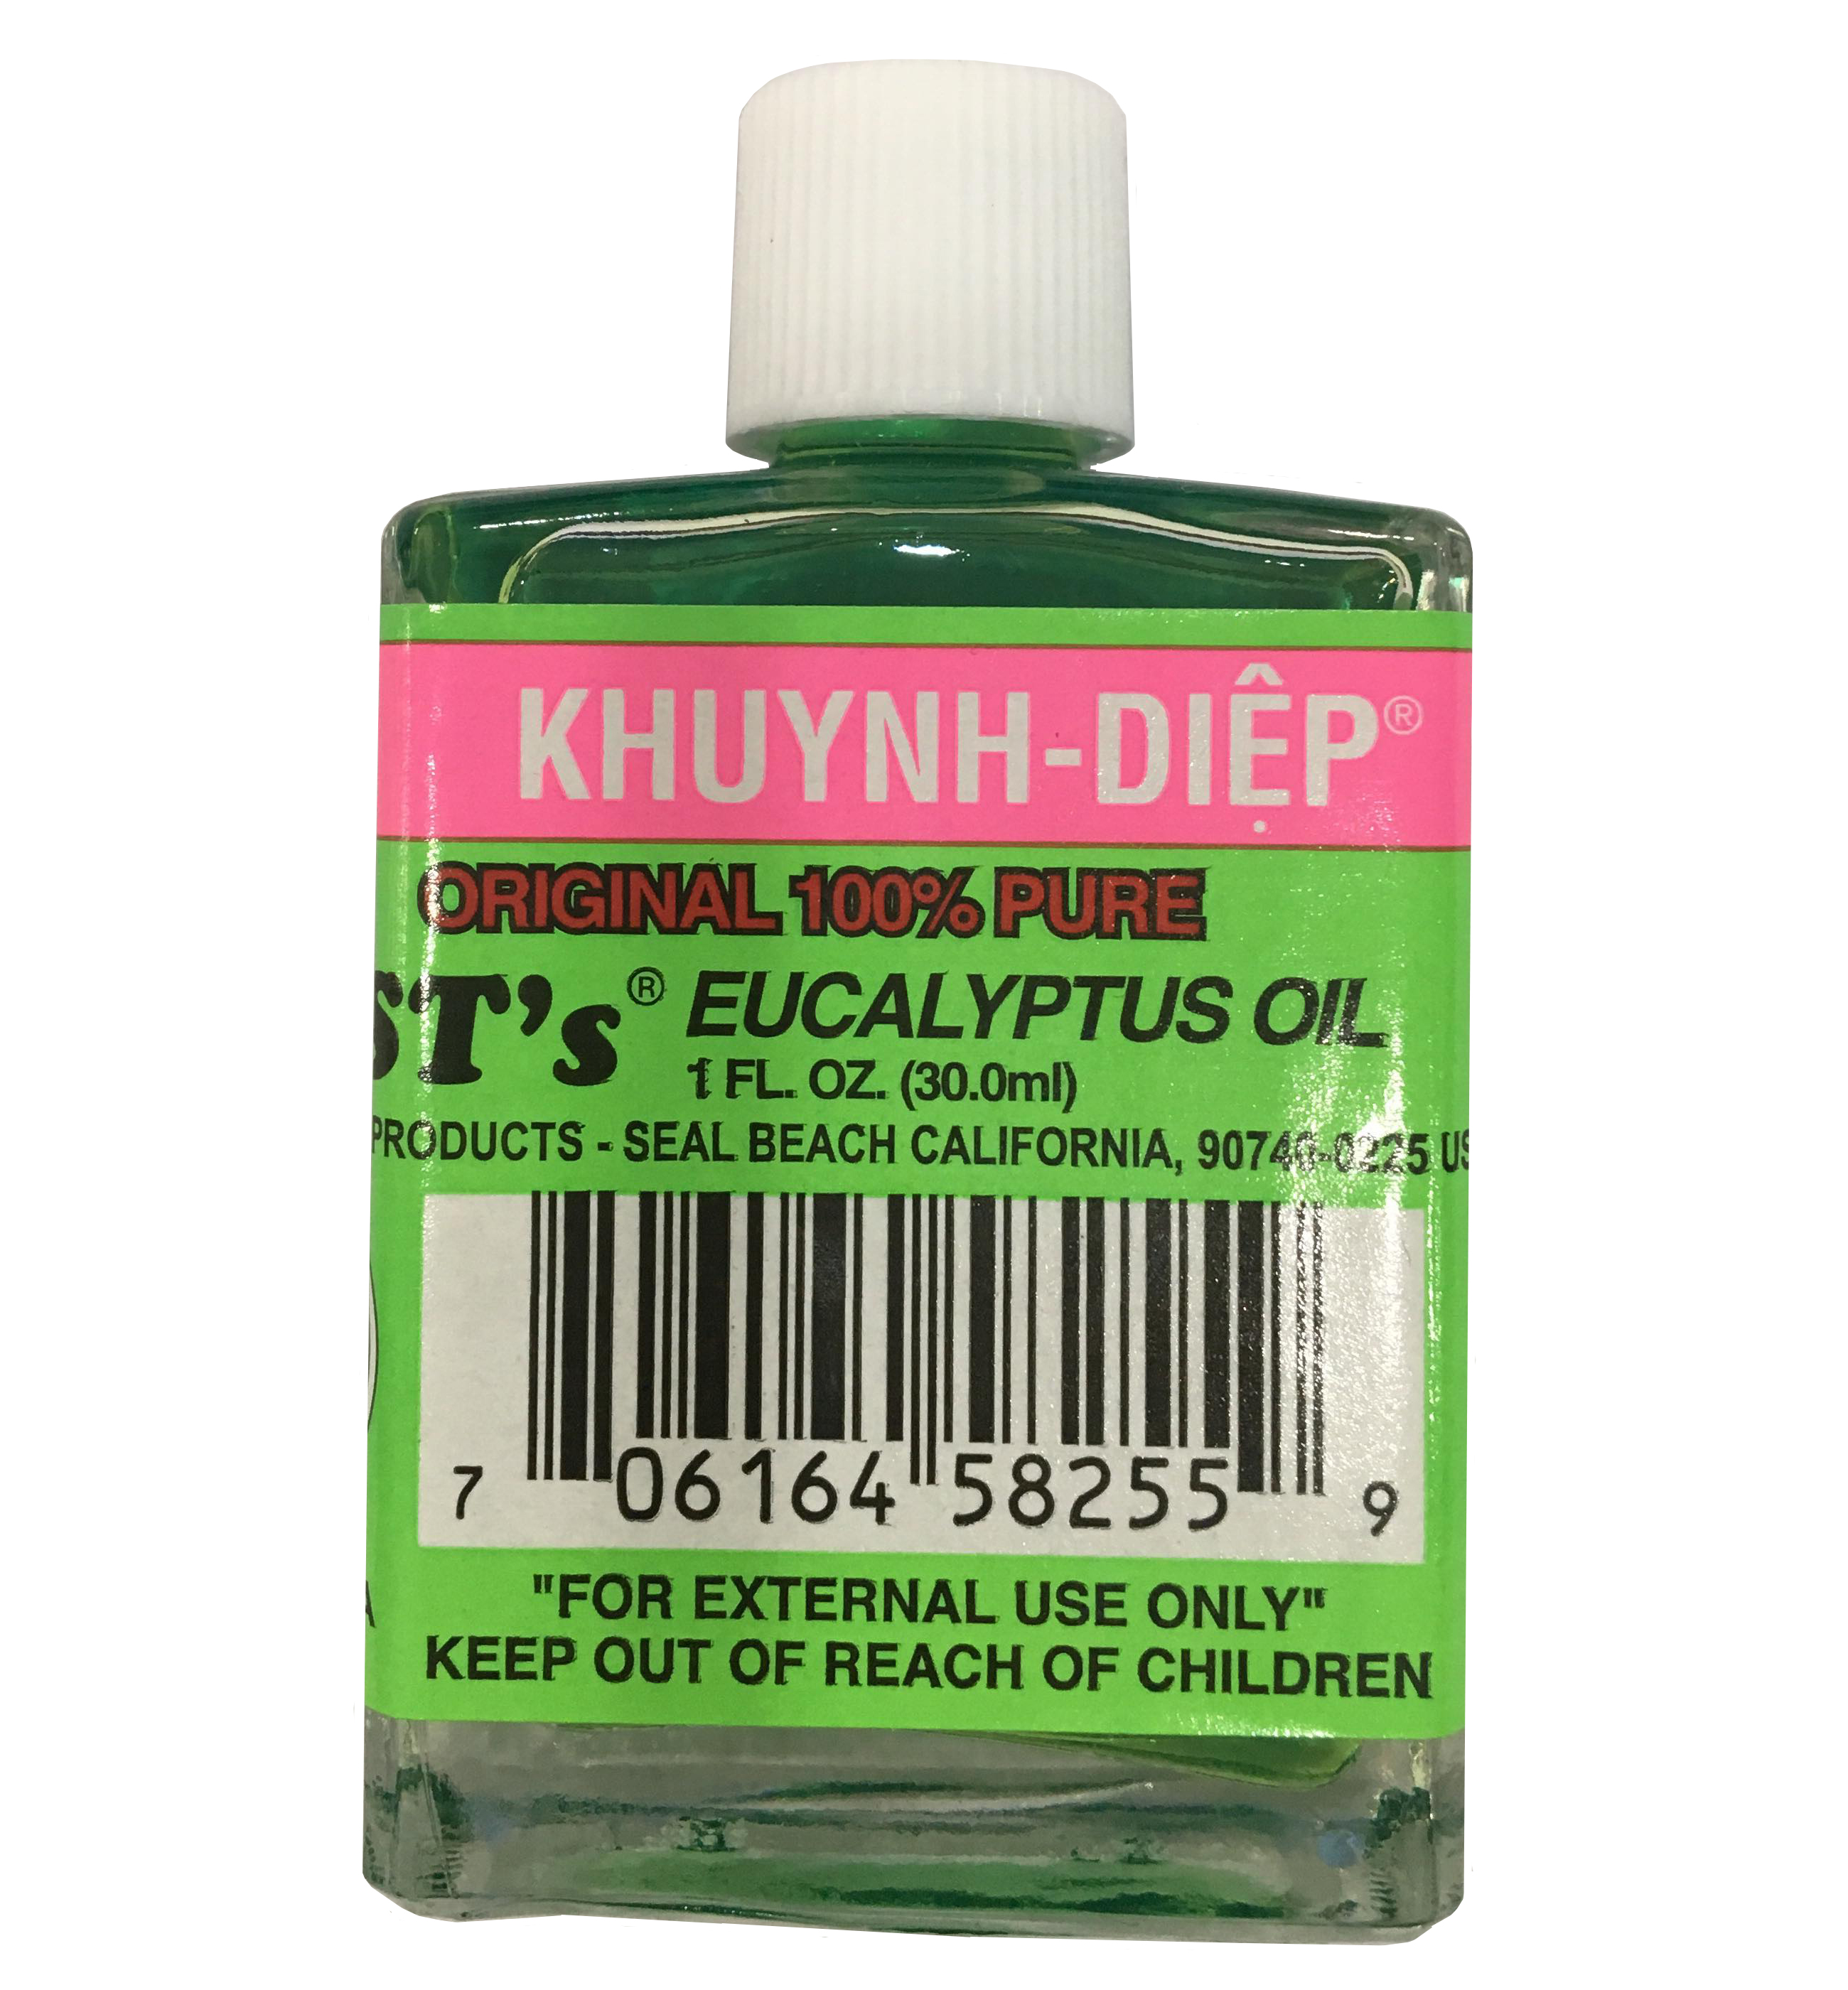 Dầu khuynh diệp BST's Eucalyptus Oil 30ml của Mỹ